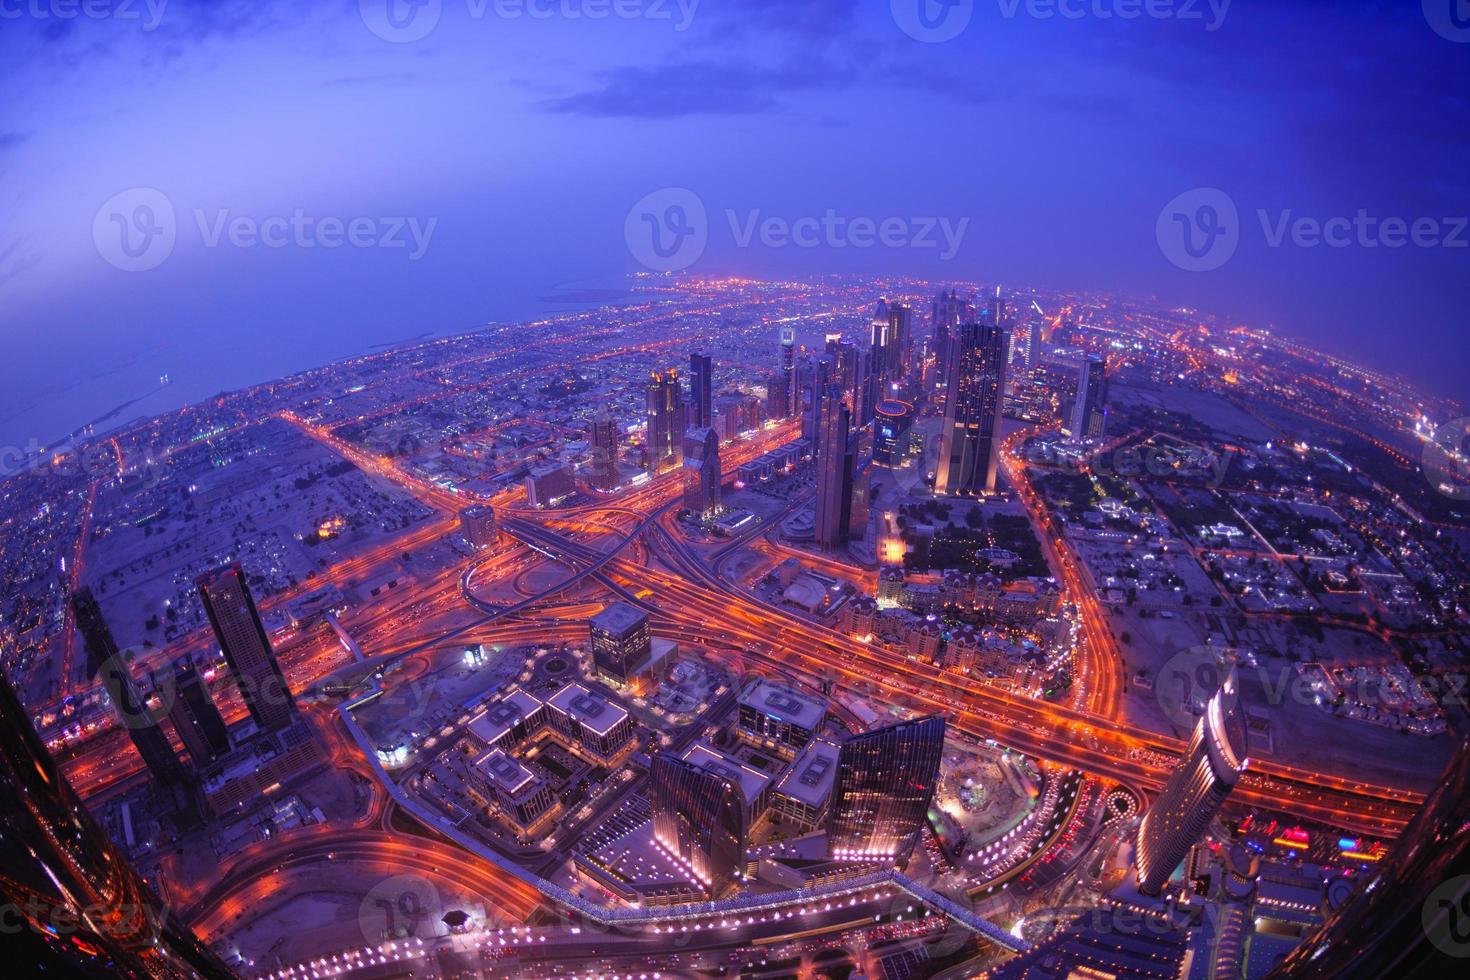 Dubai skyline view photo